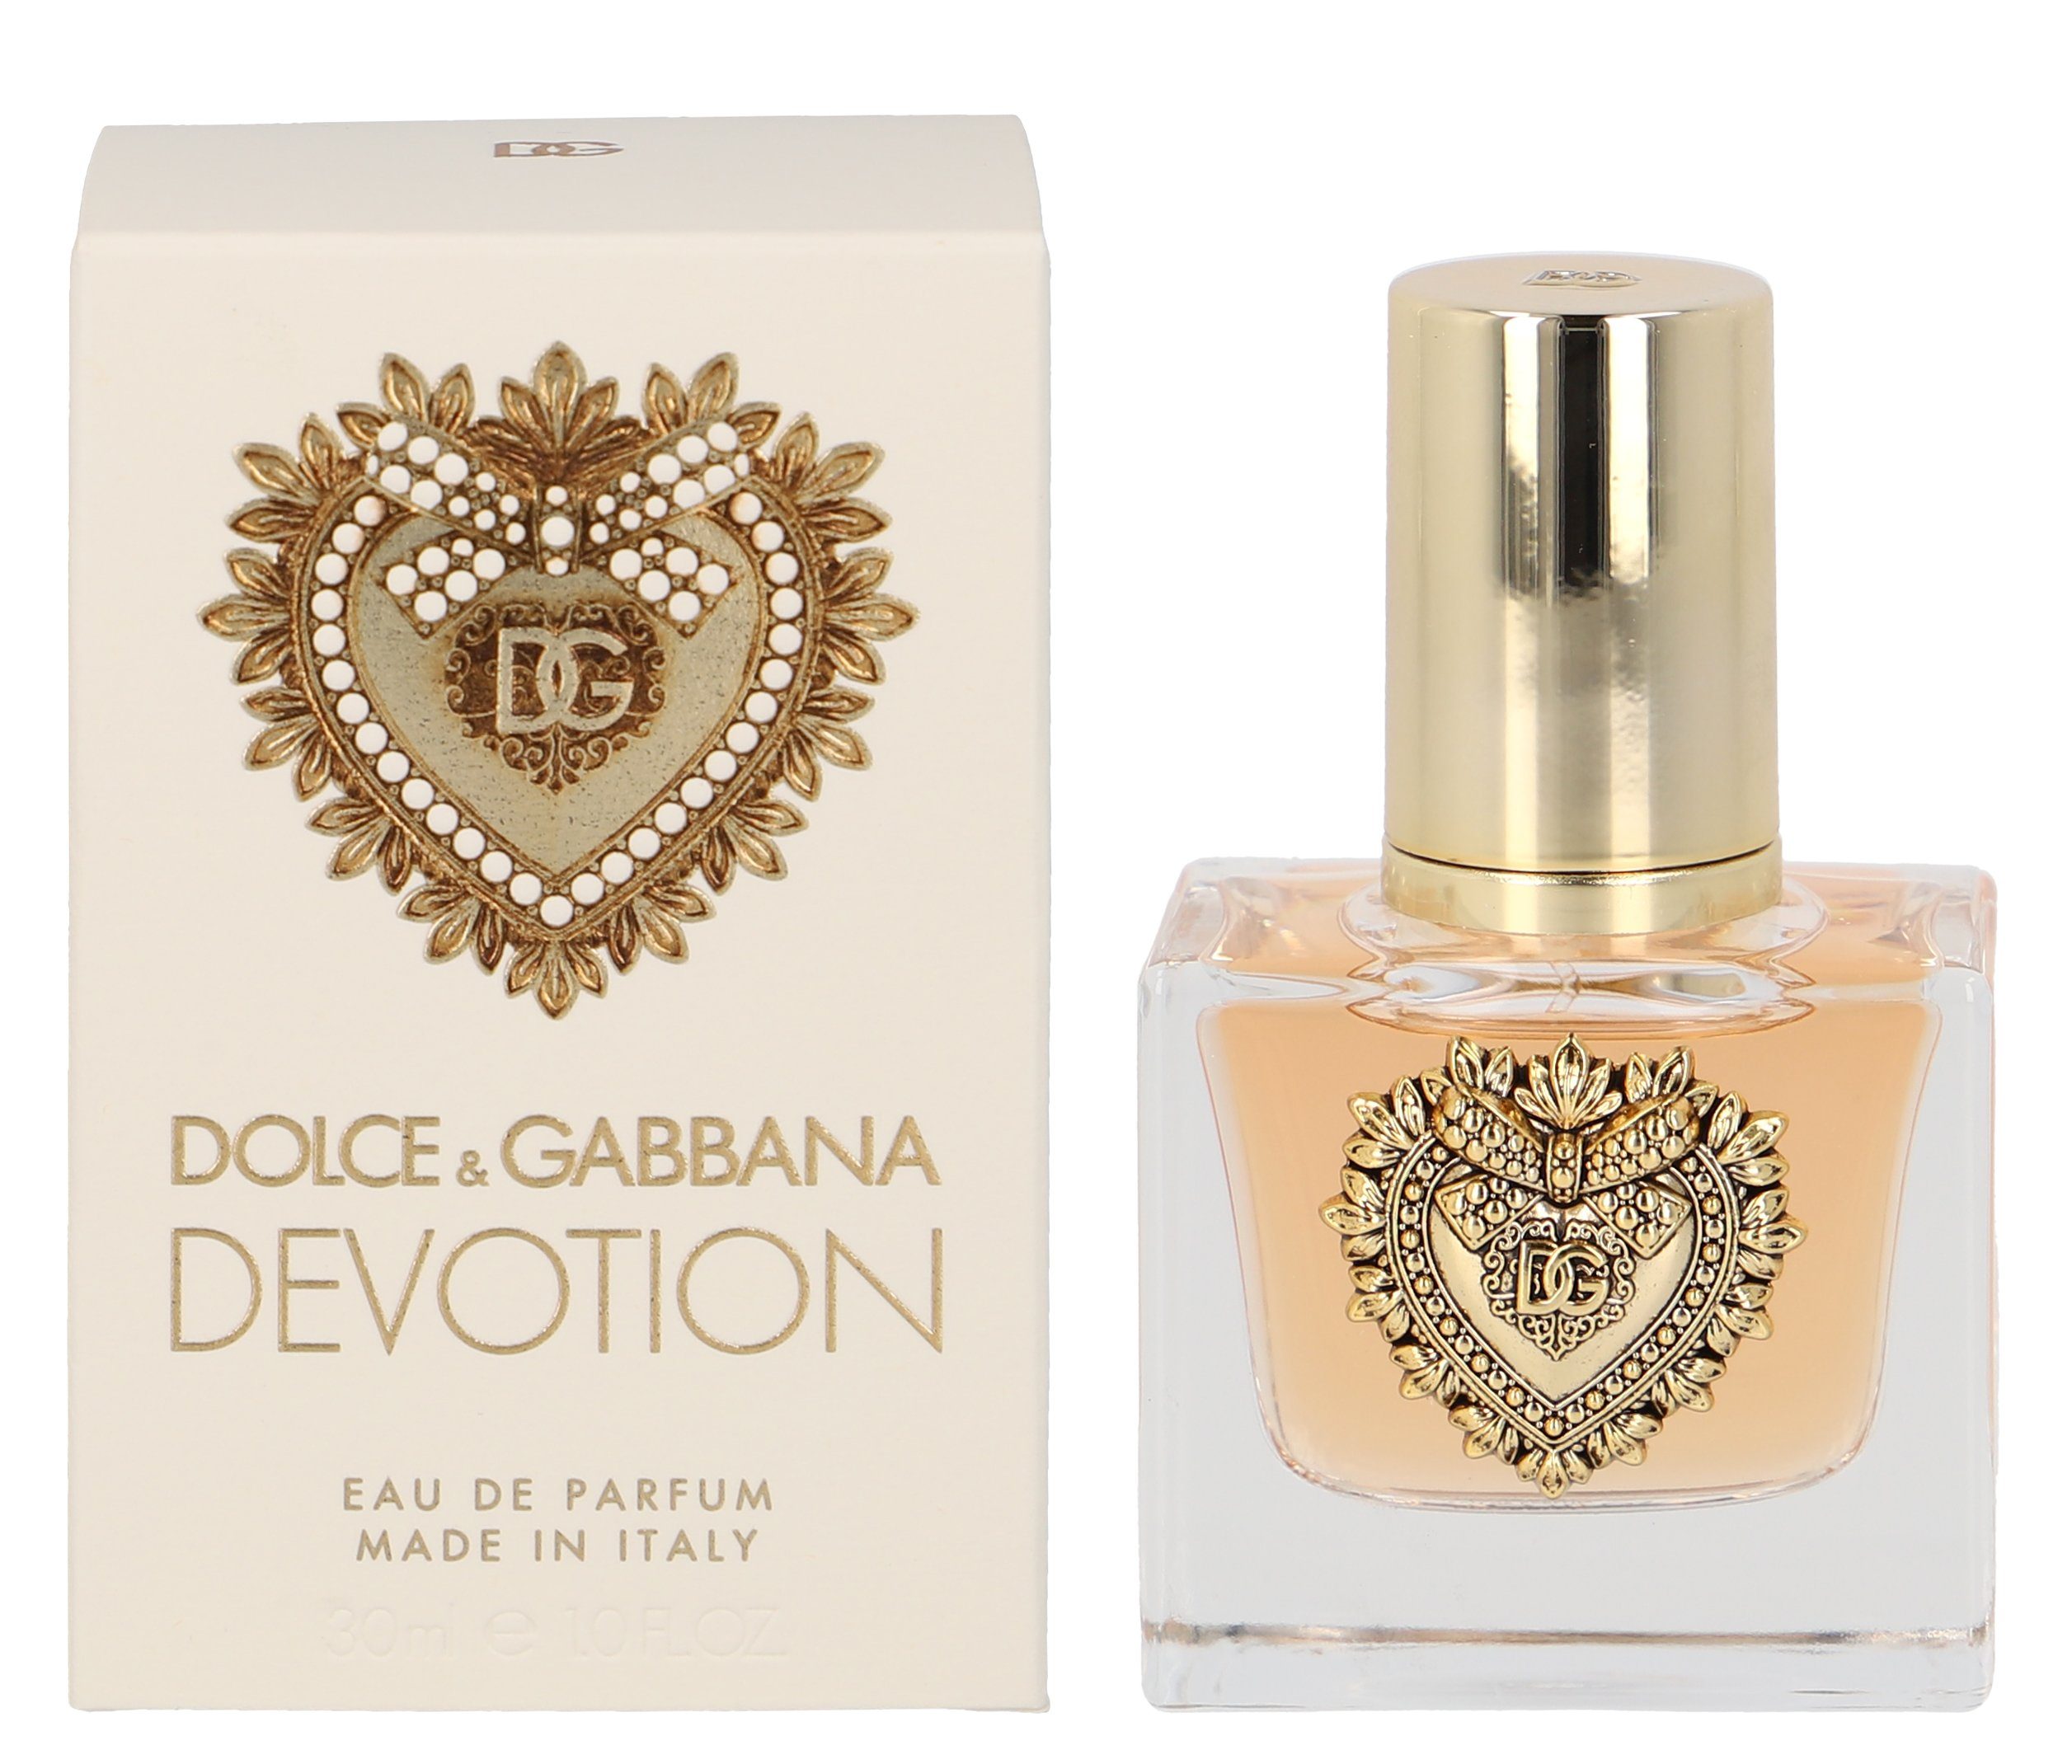 DOLCE & GABBANA Eau de Parfum DOLCE & GABBANA Devotion Eau de Parfum